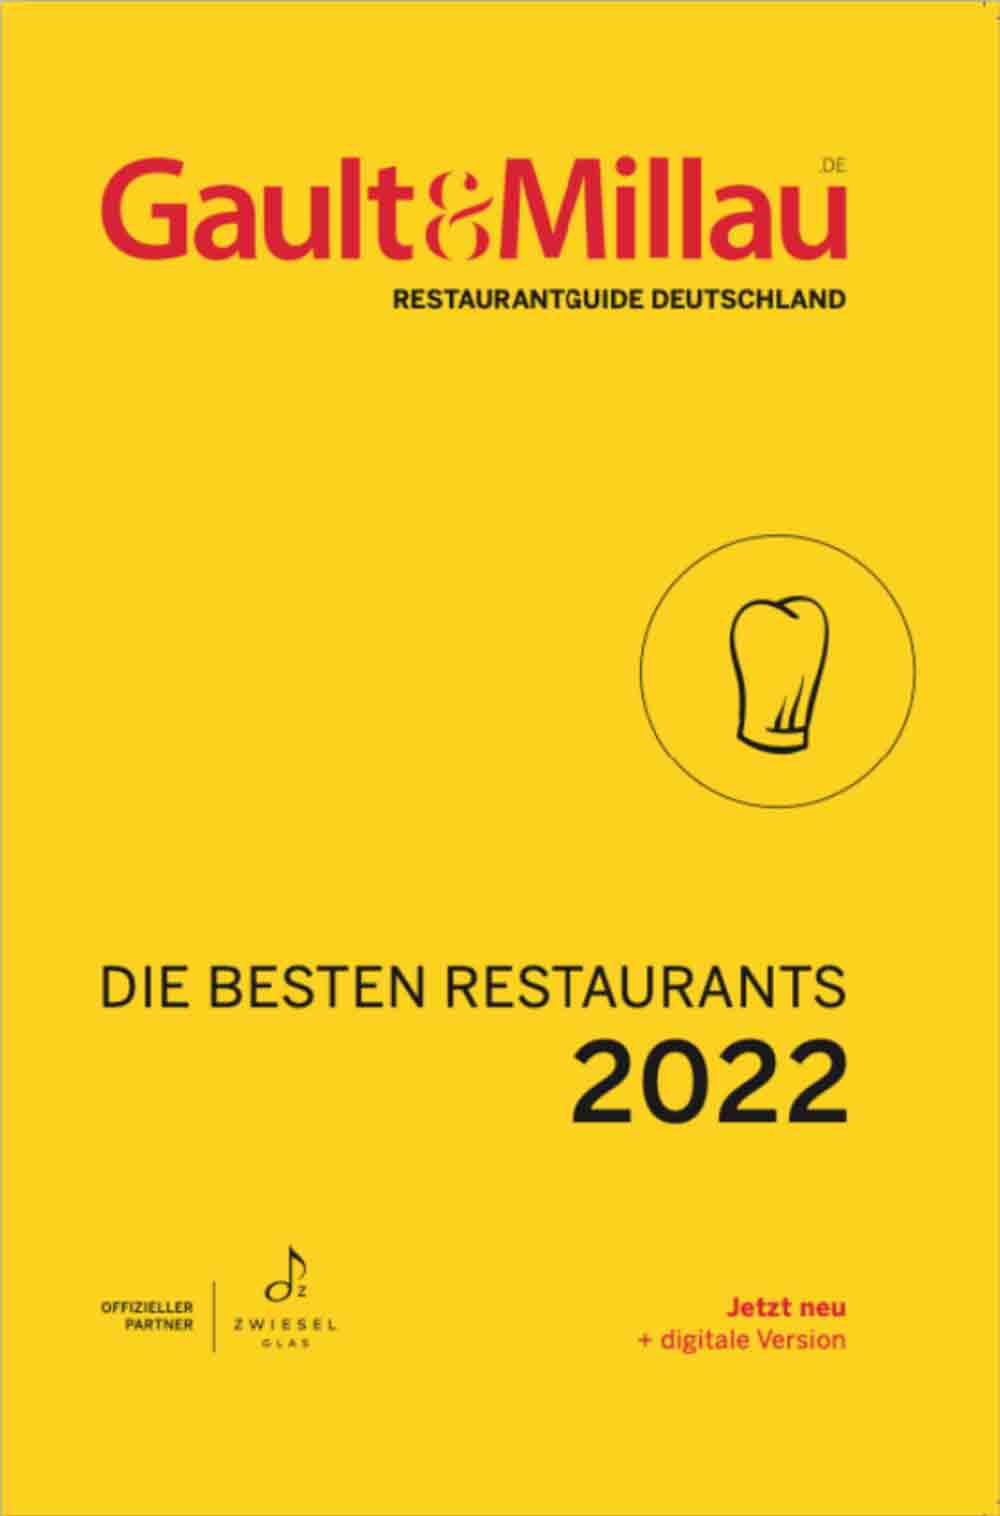 Gault & Millau küren die besten Restaurants Deutschlands 2022, Dylan Watson Brawn zum Koch des Jahres 2022 gekürt